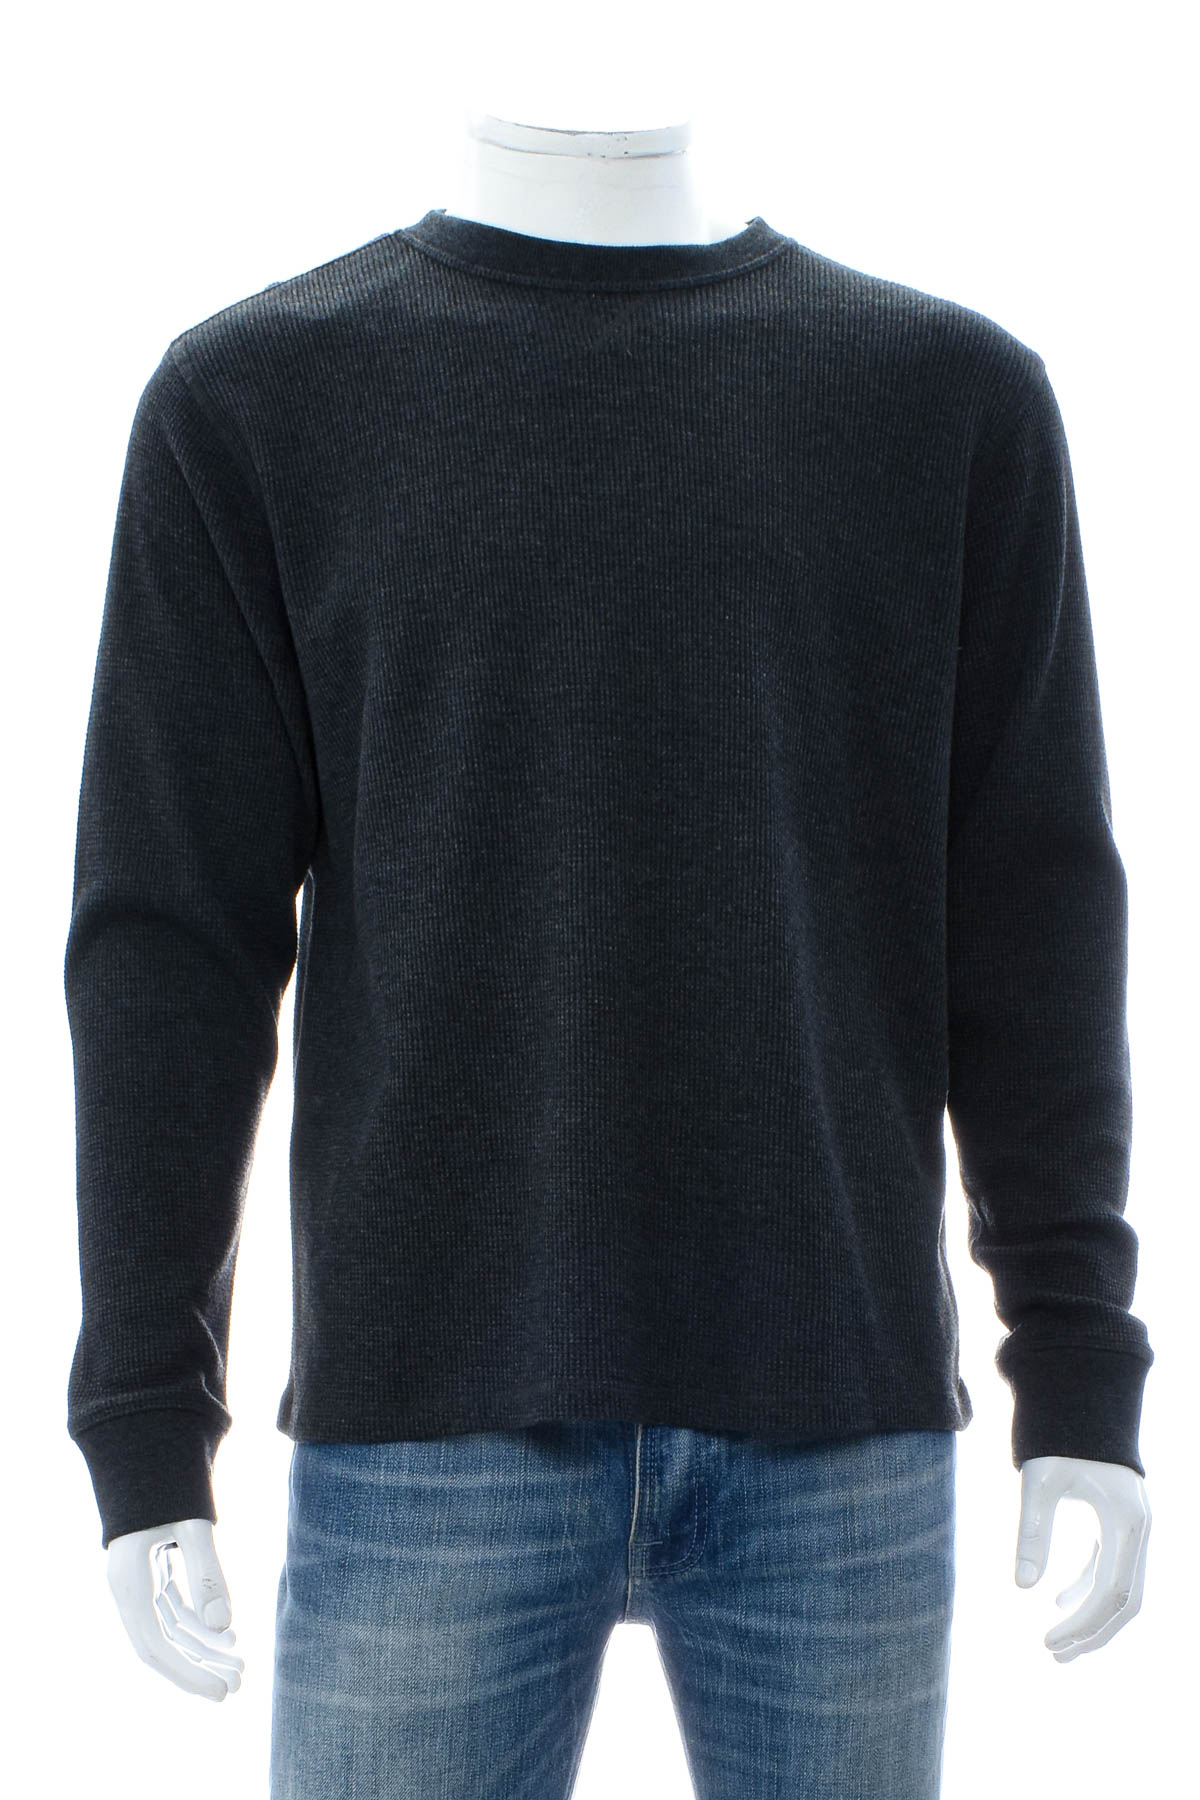 Men's sweater - Member's Mark - 0